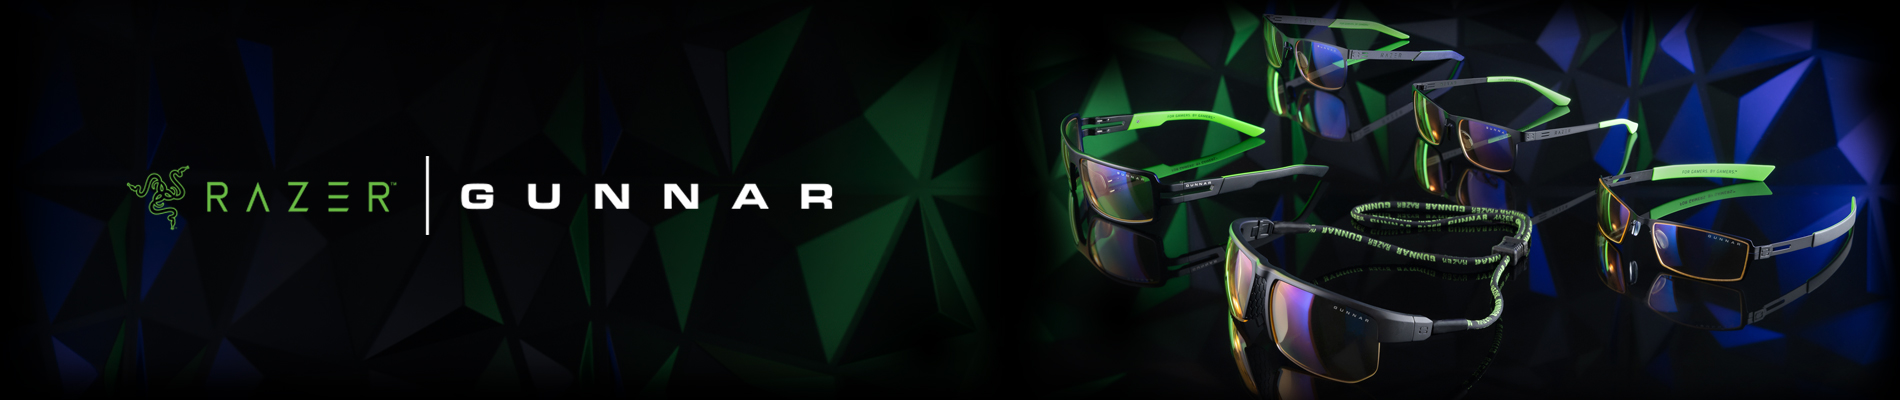 Razer Header Image Refresh V1 - GUNNAR x Razer